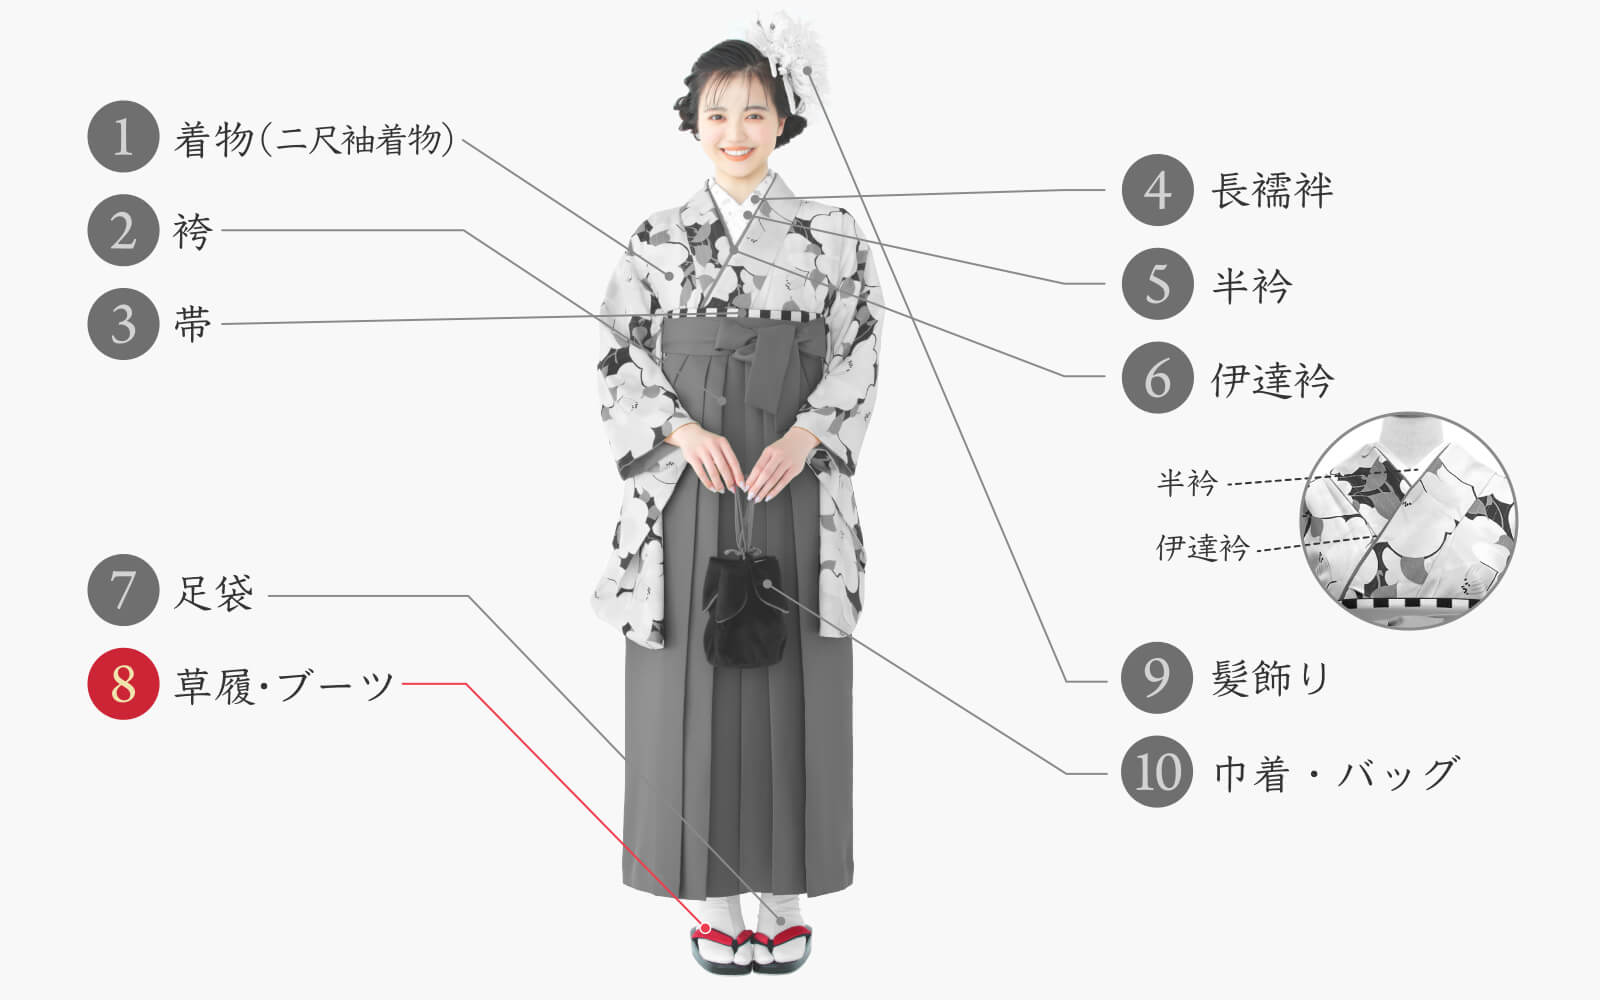 袖丈1125cm振袖(正絹) 長襦袢、帯(正絹)、袴、帯揚げ、帯締めのセット